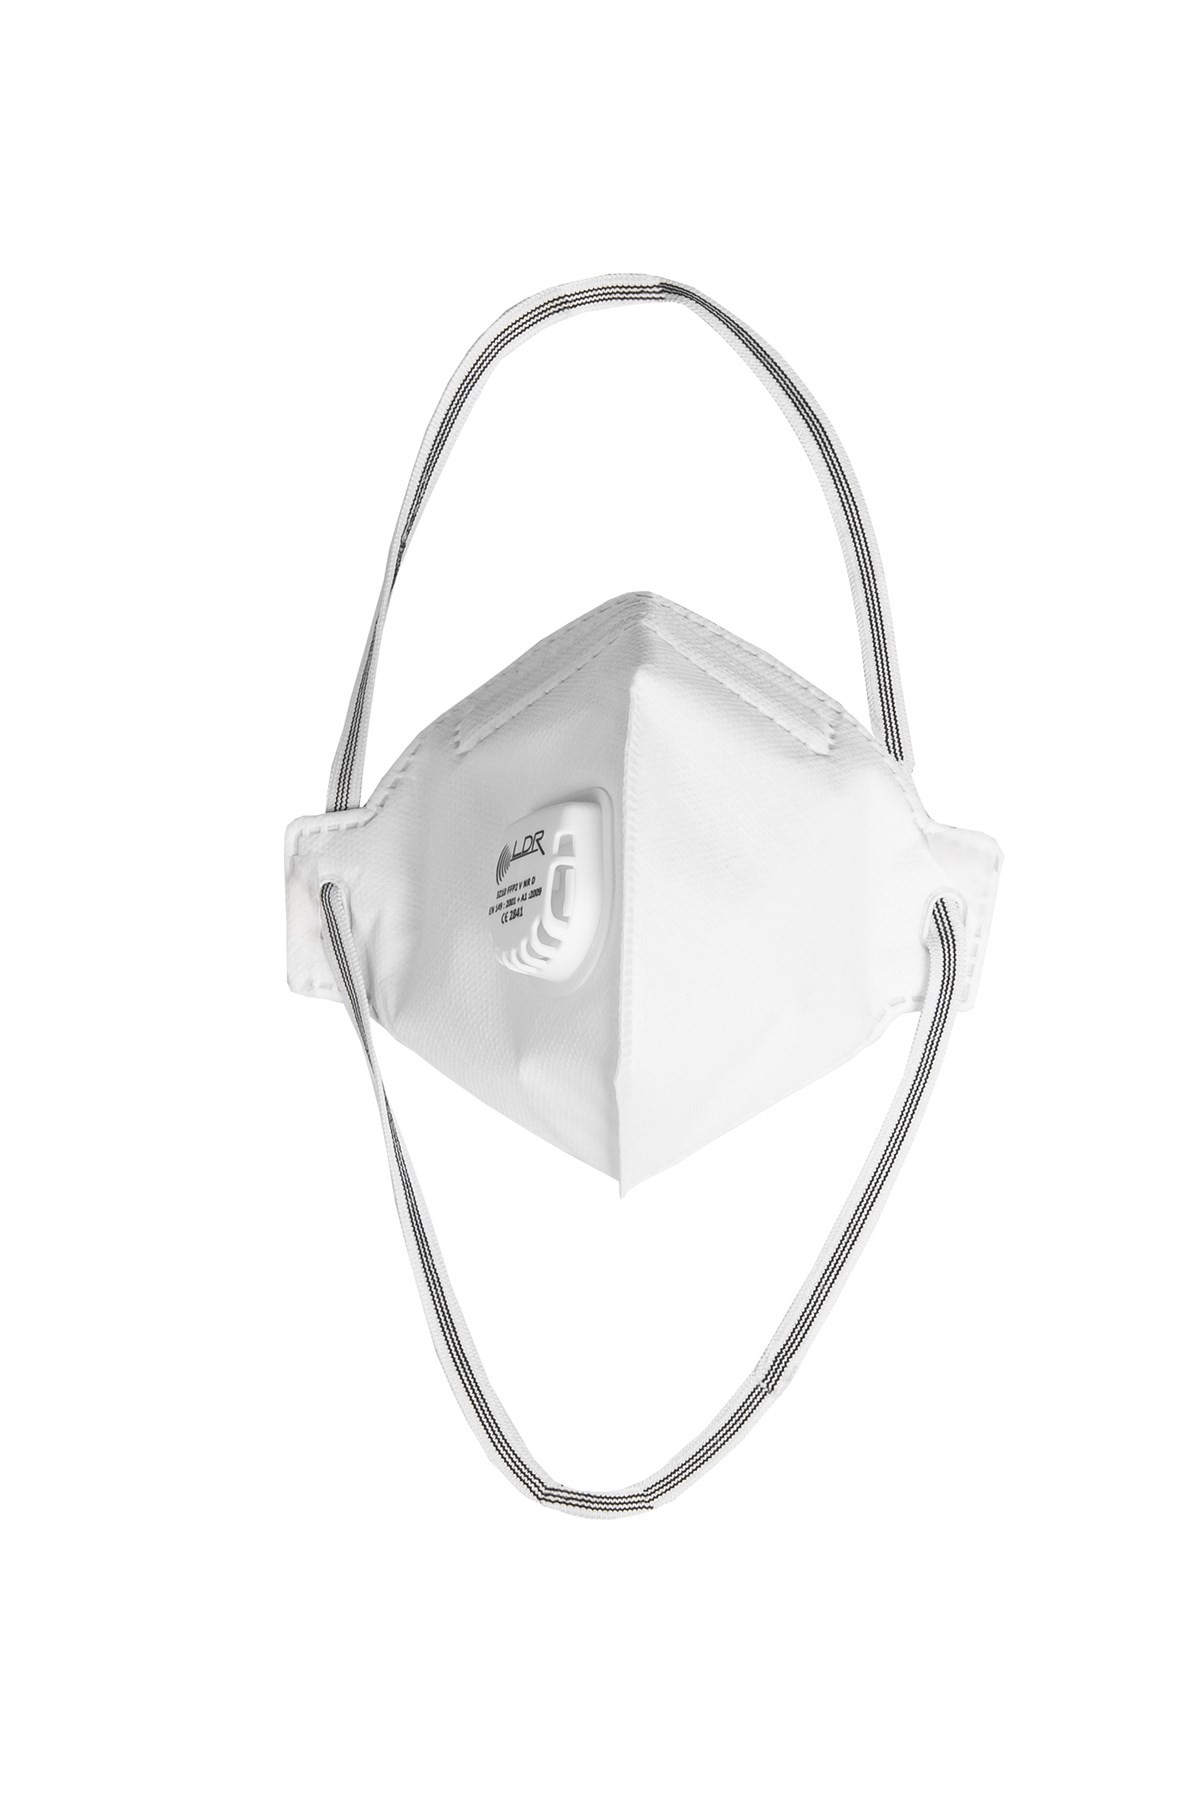 Masque anti-poussière LDR 3210 FFP2 NR V blanc (paquet de 15)